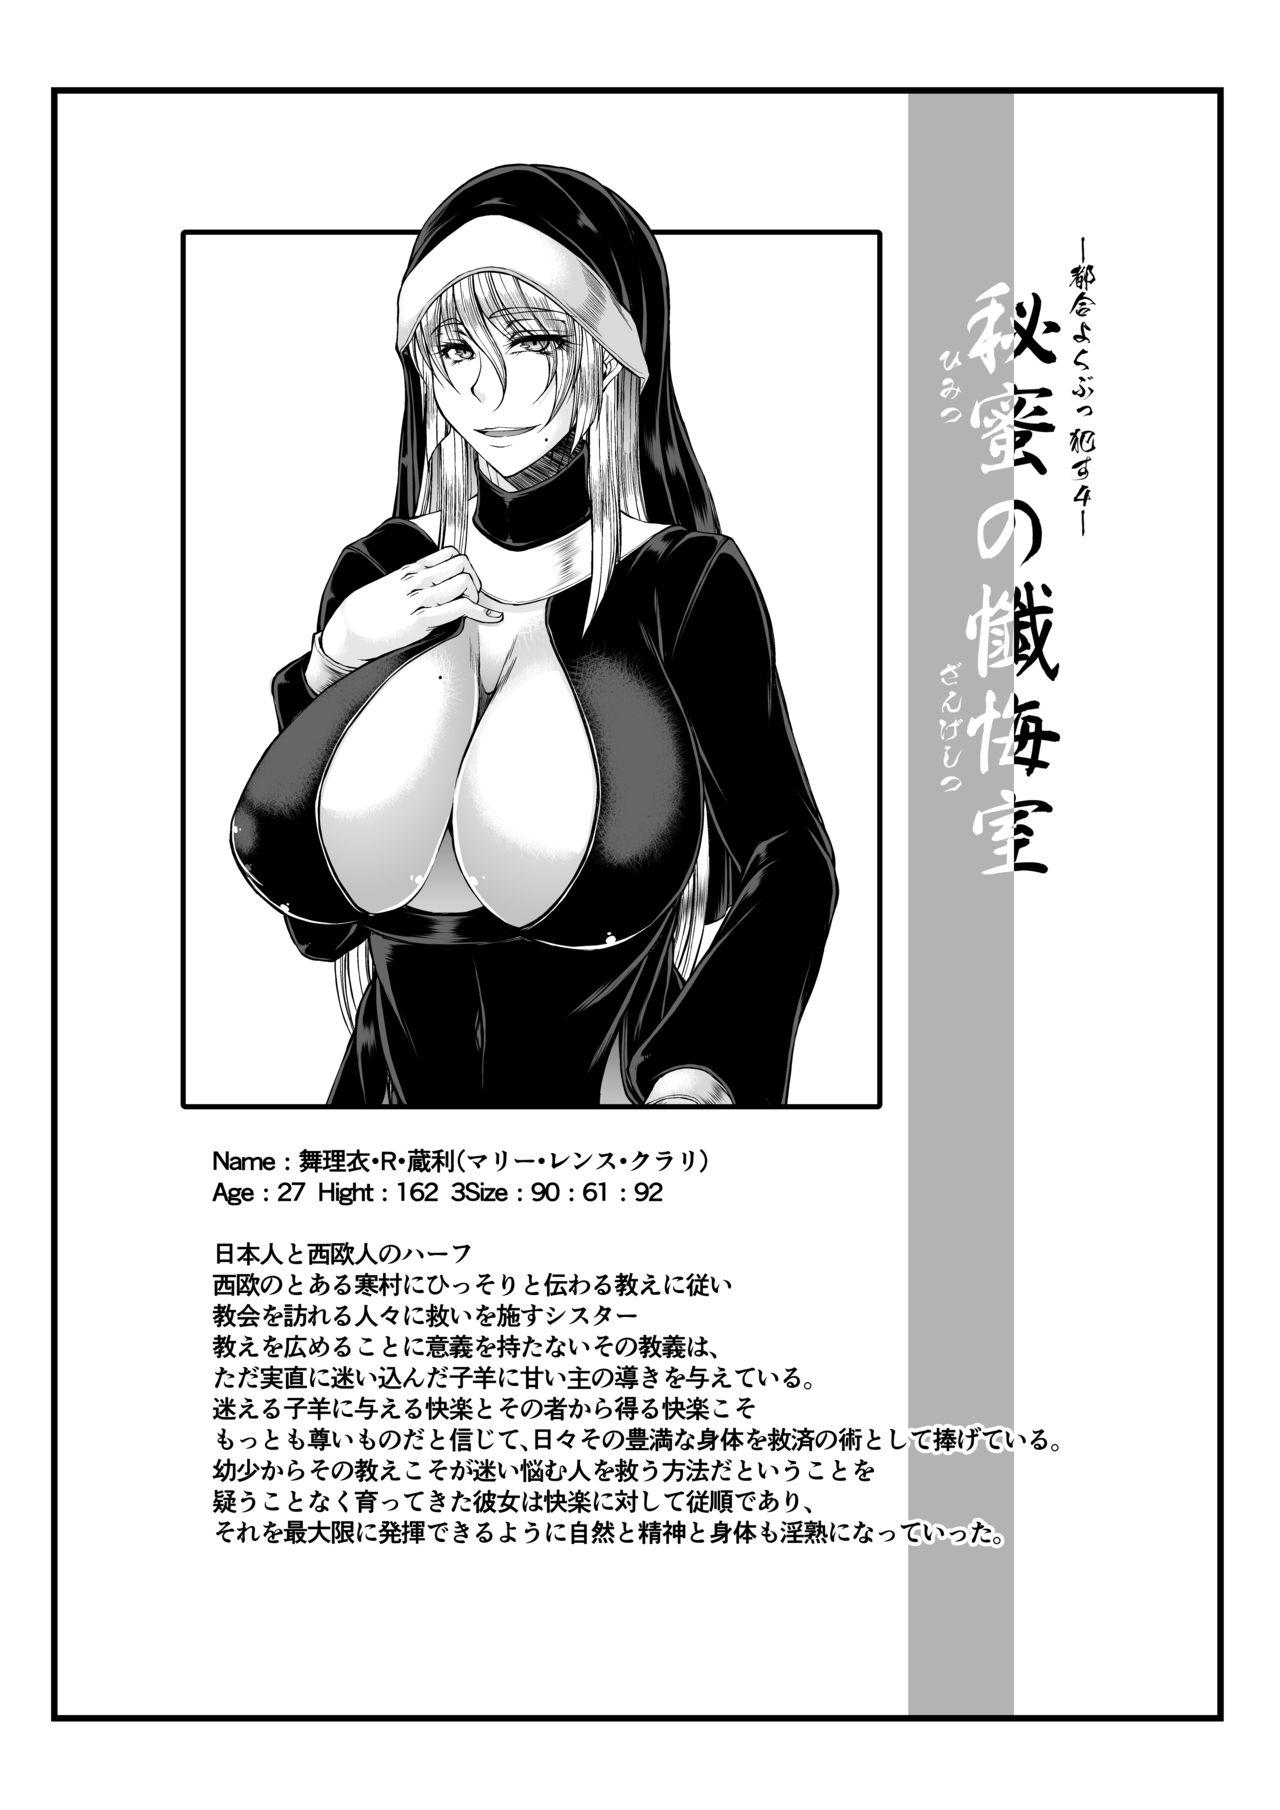 Chibola Himitsu no Zangeshitsu - Original Gaypawn - Page 2